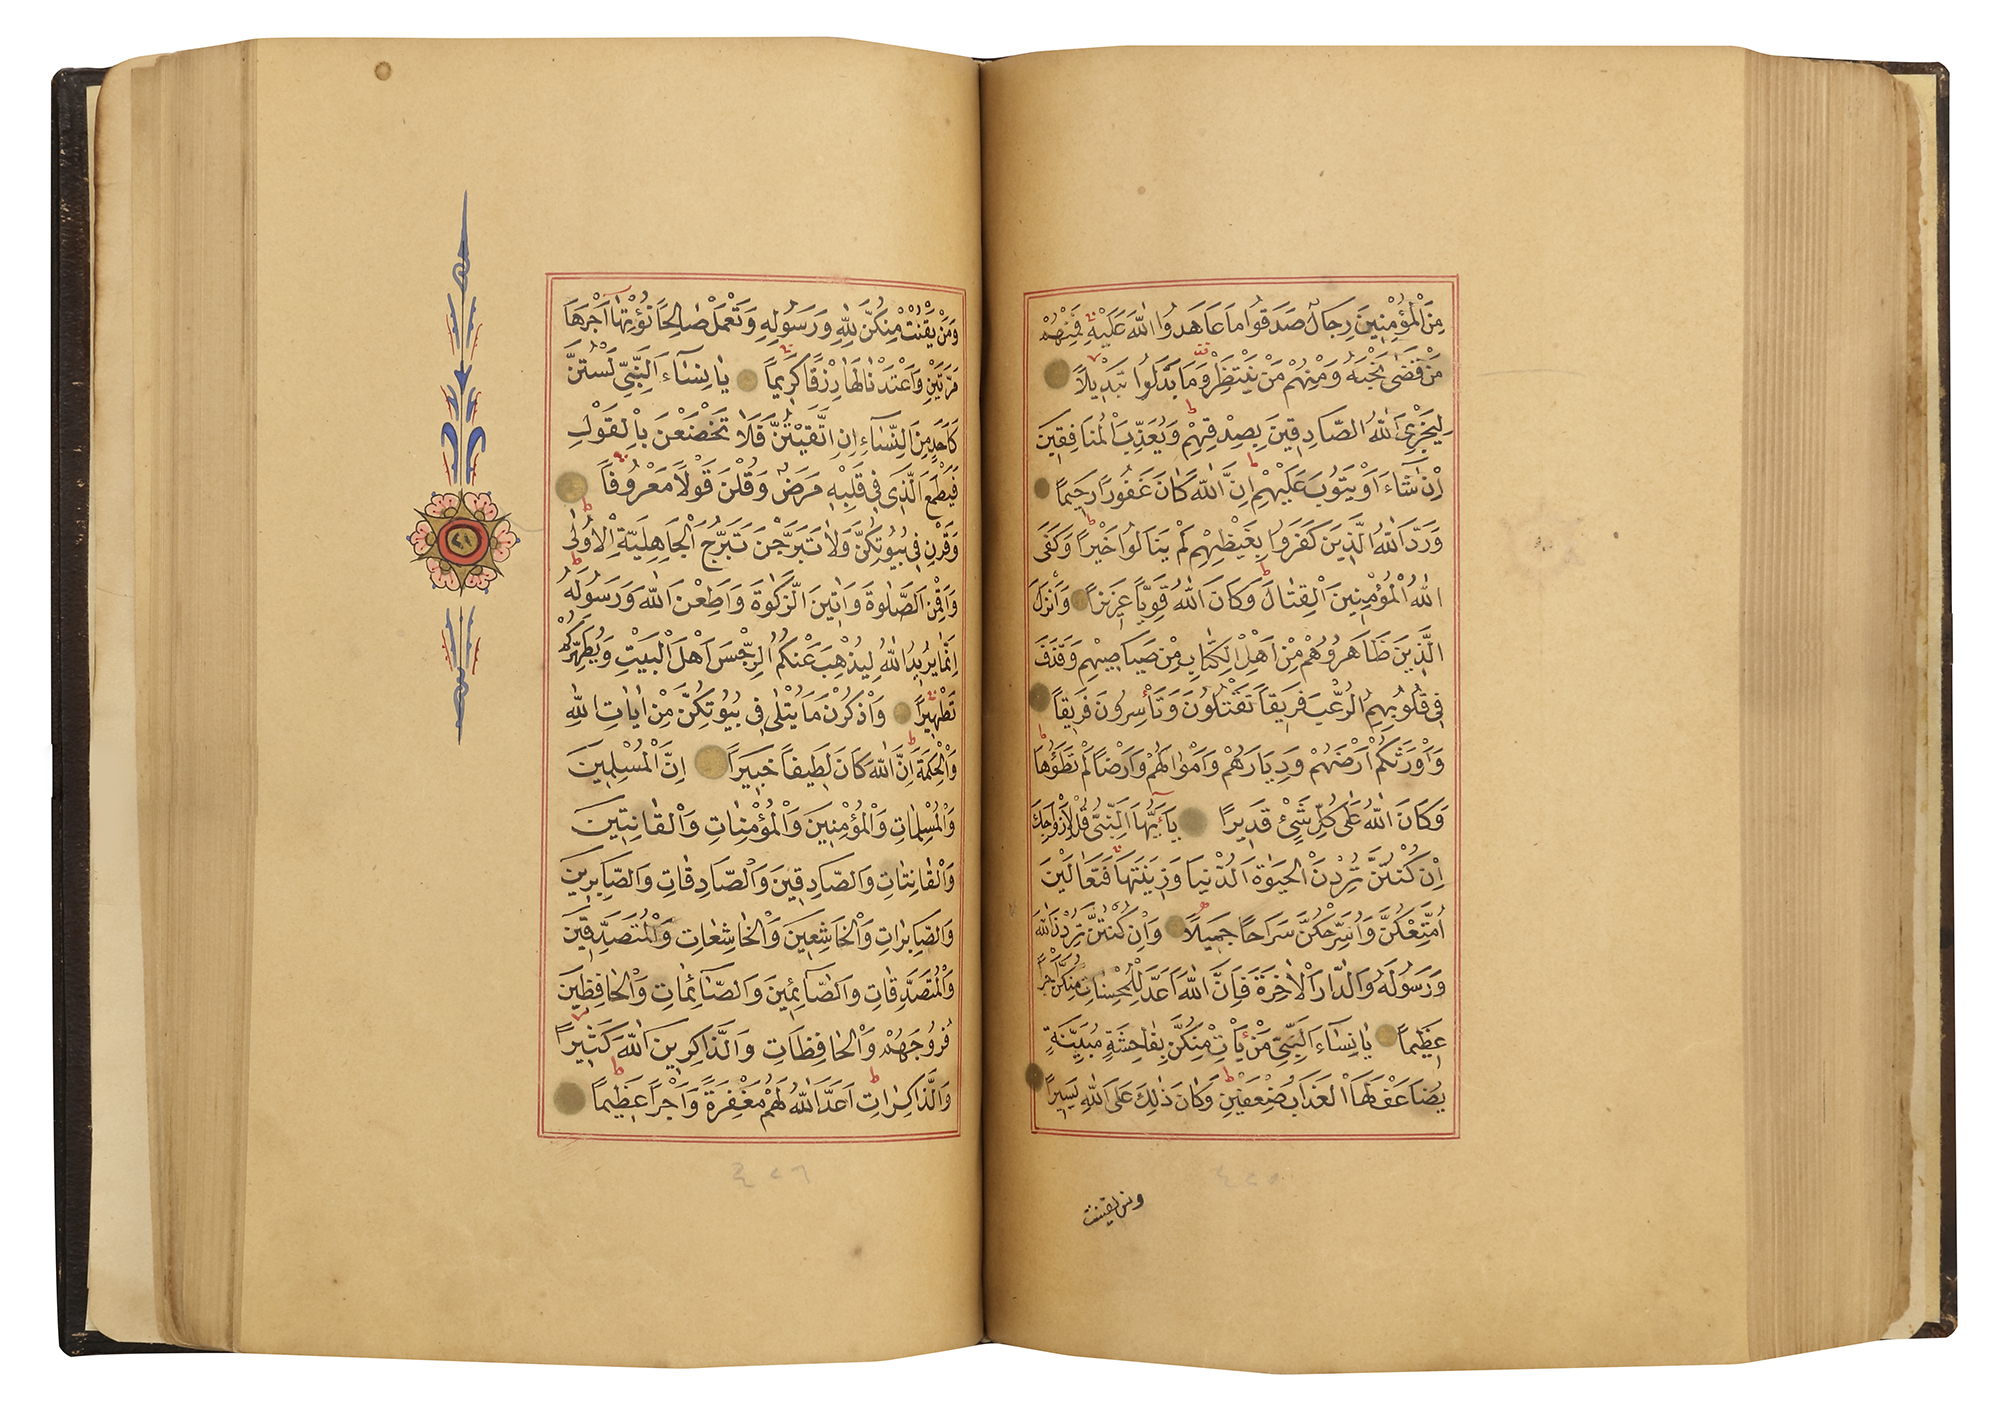 A FINE OTTOMAN QURAN, TURKEY, EDIRNE, WRITTEN BY HUSSEIN AL-HUSNA IBN AHMED AL-ADRUNI, DATED 1287 AH - Image 5 of 8